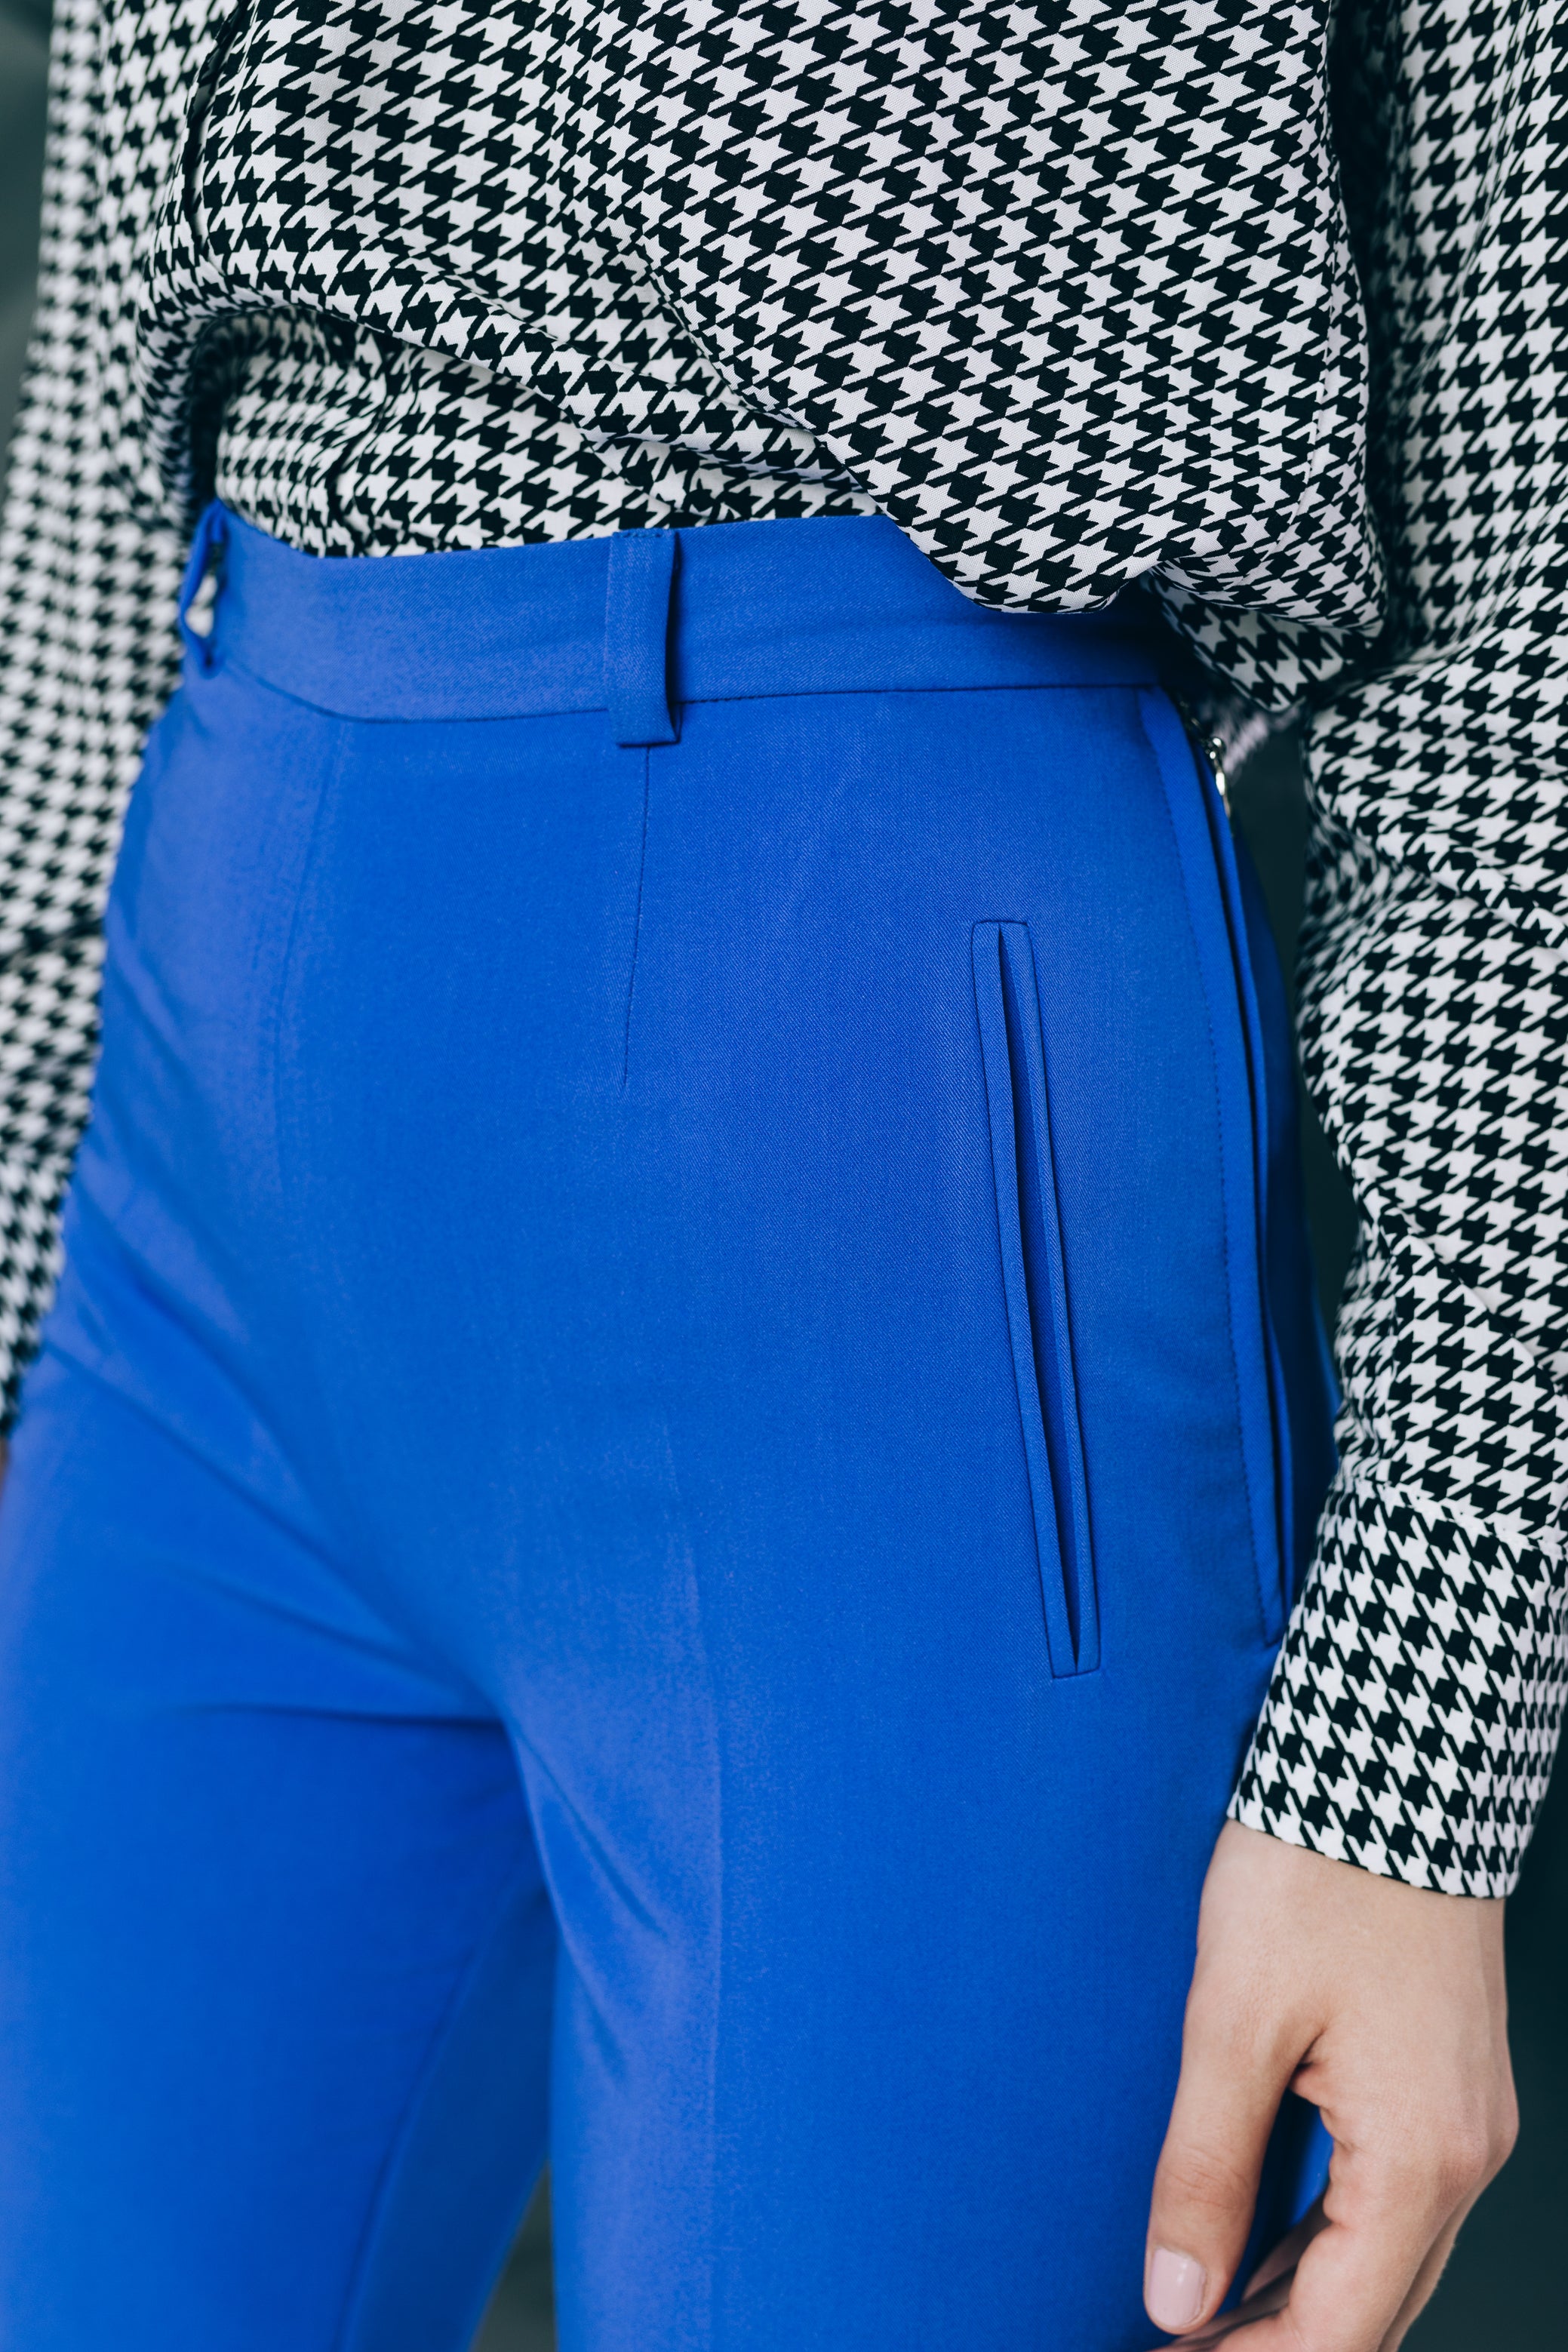 Панталоне високог струка у спектру плаве боје